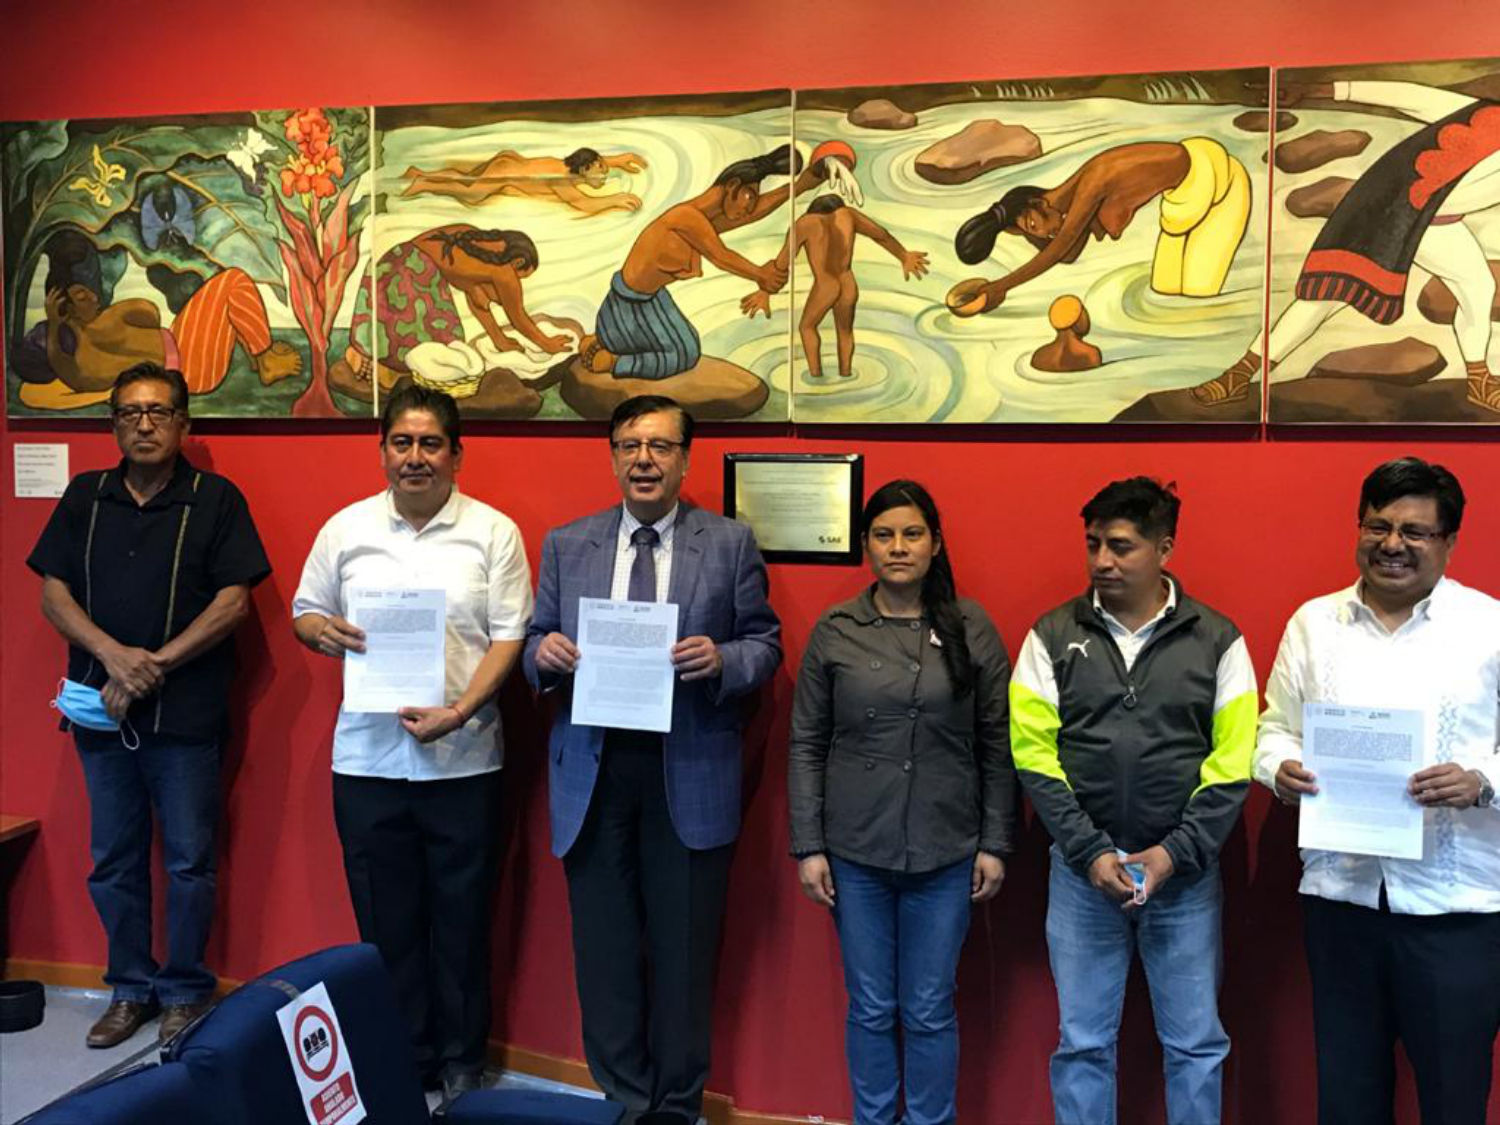 Para honrar la memoria de Benito Juárez, el Gobierno de México entrega 57.6 millones de pesos a Guelatao, Oaxaca, para garantizar su desarrollo integral